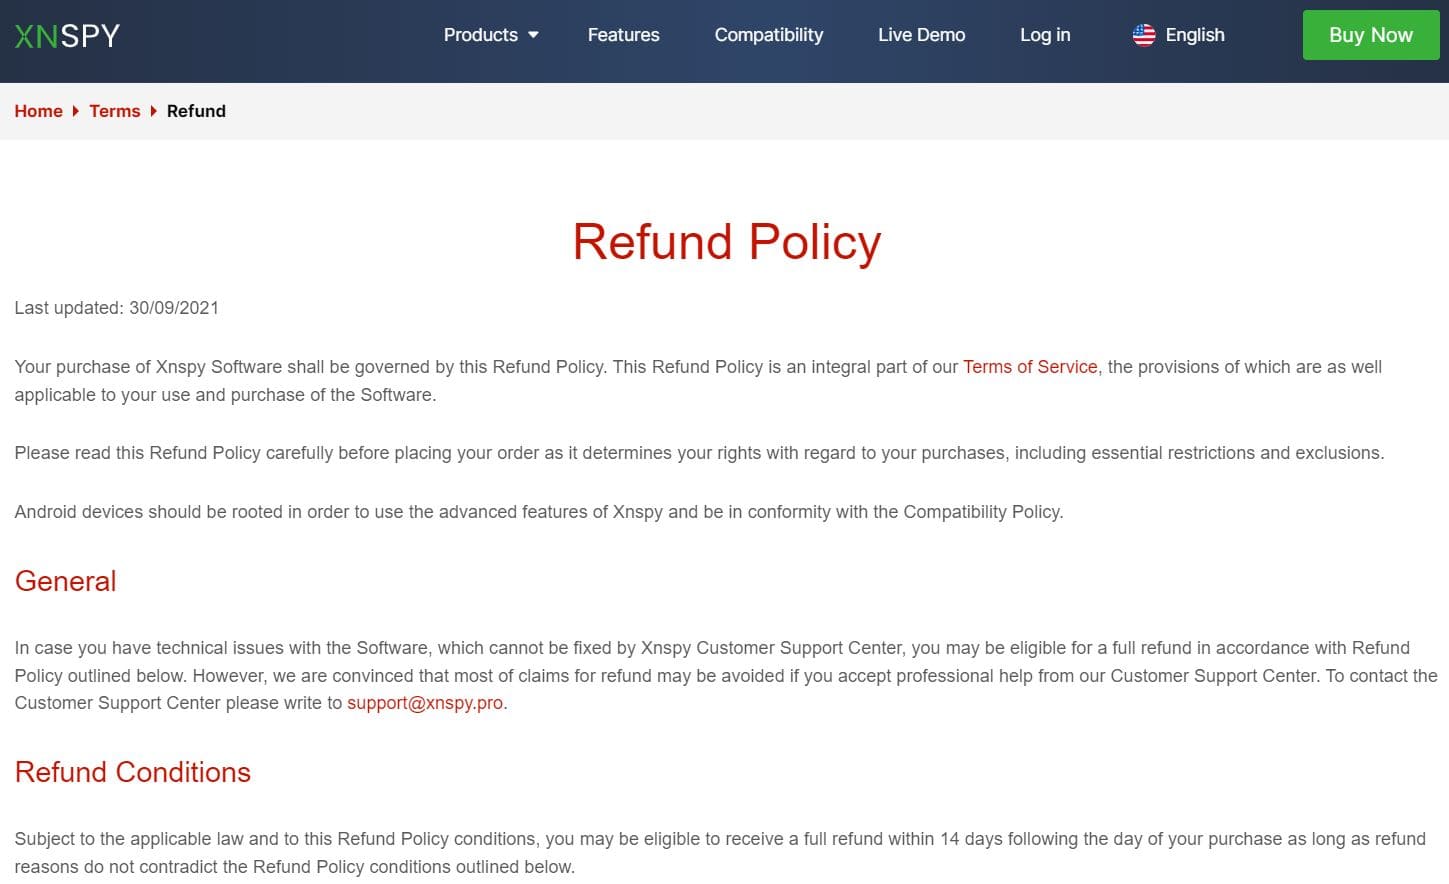 XNSPY Return Policy Description